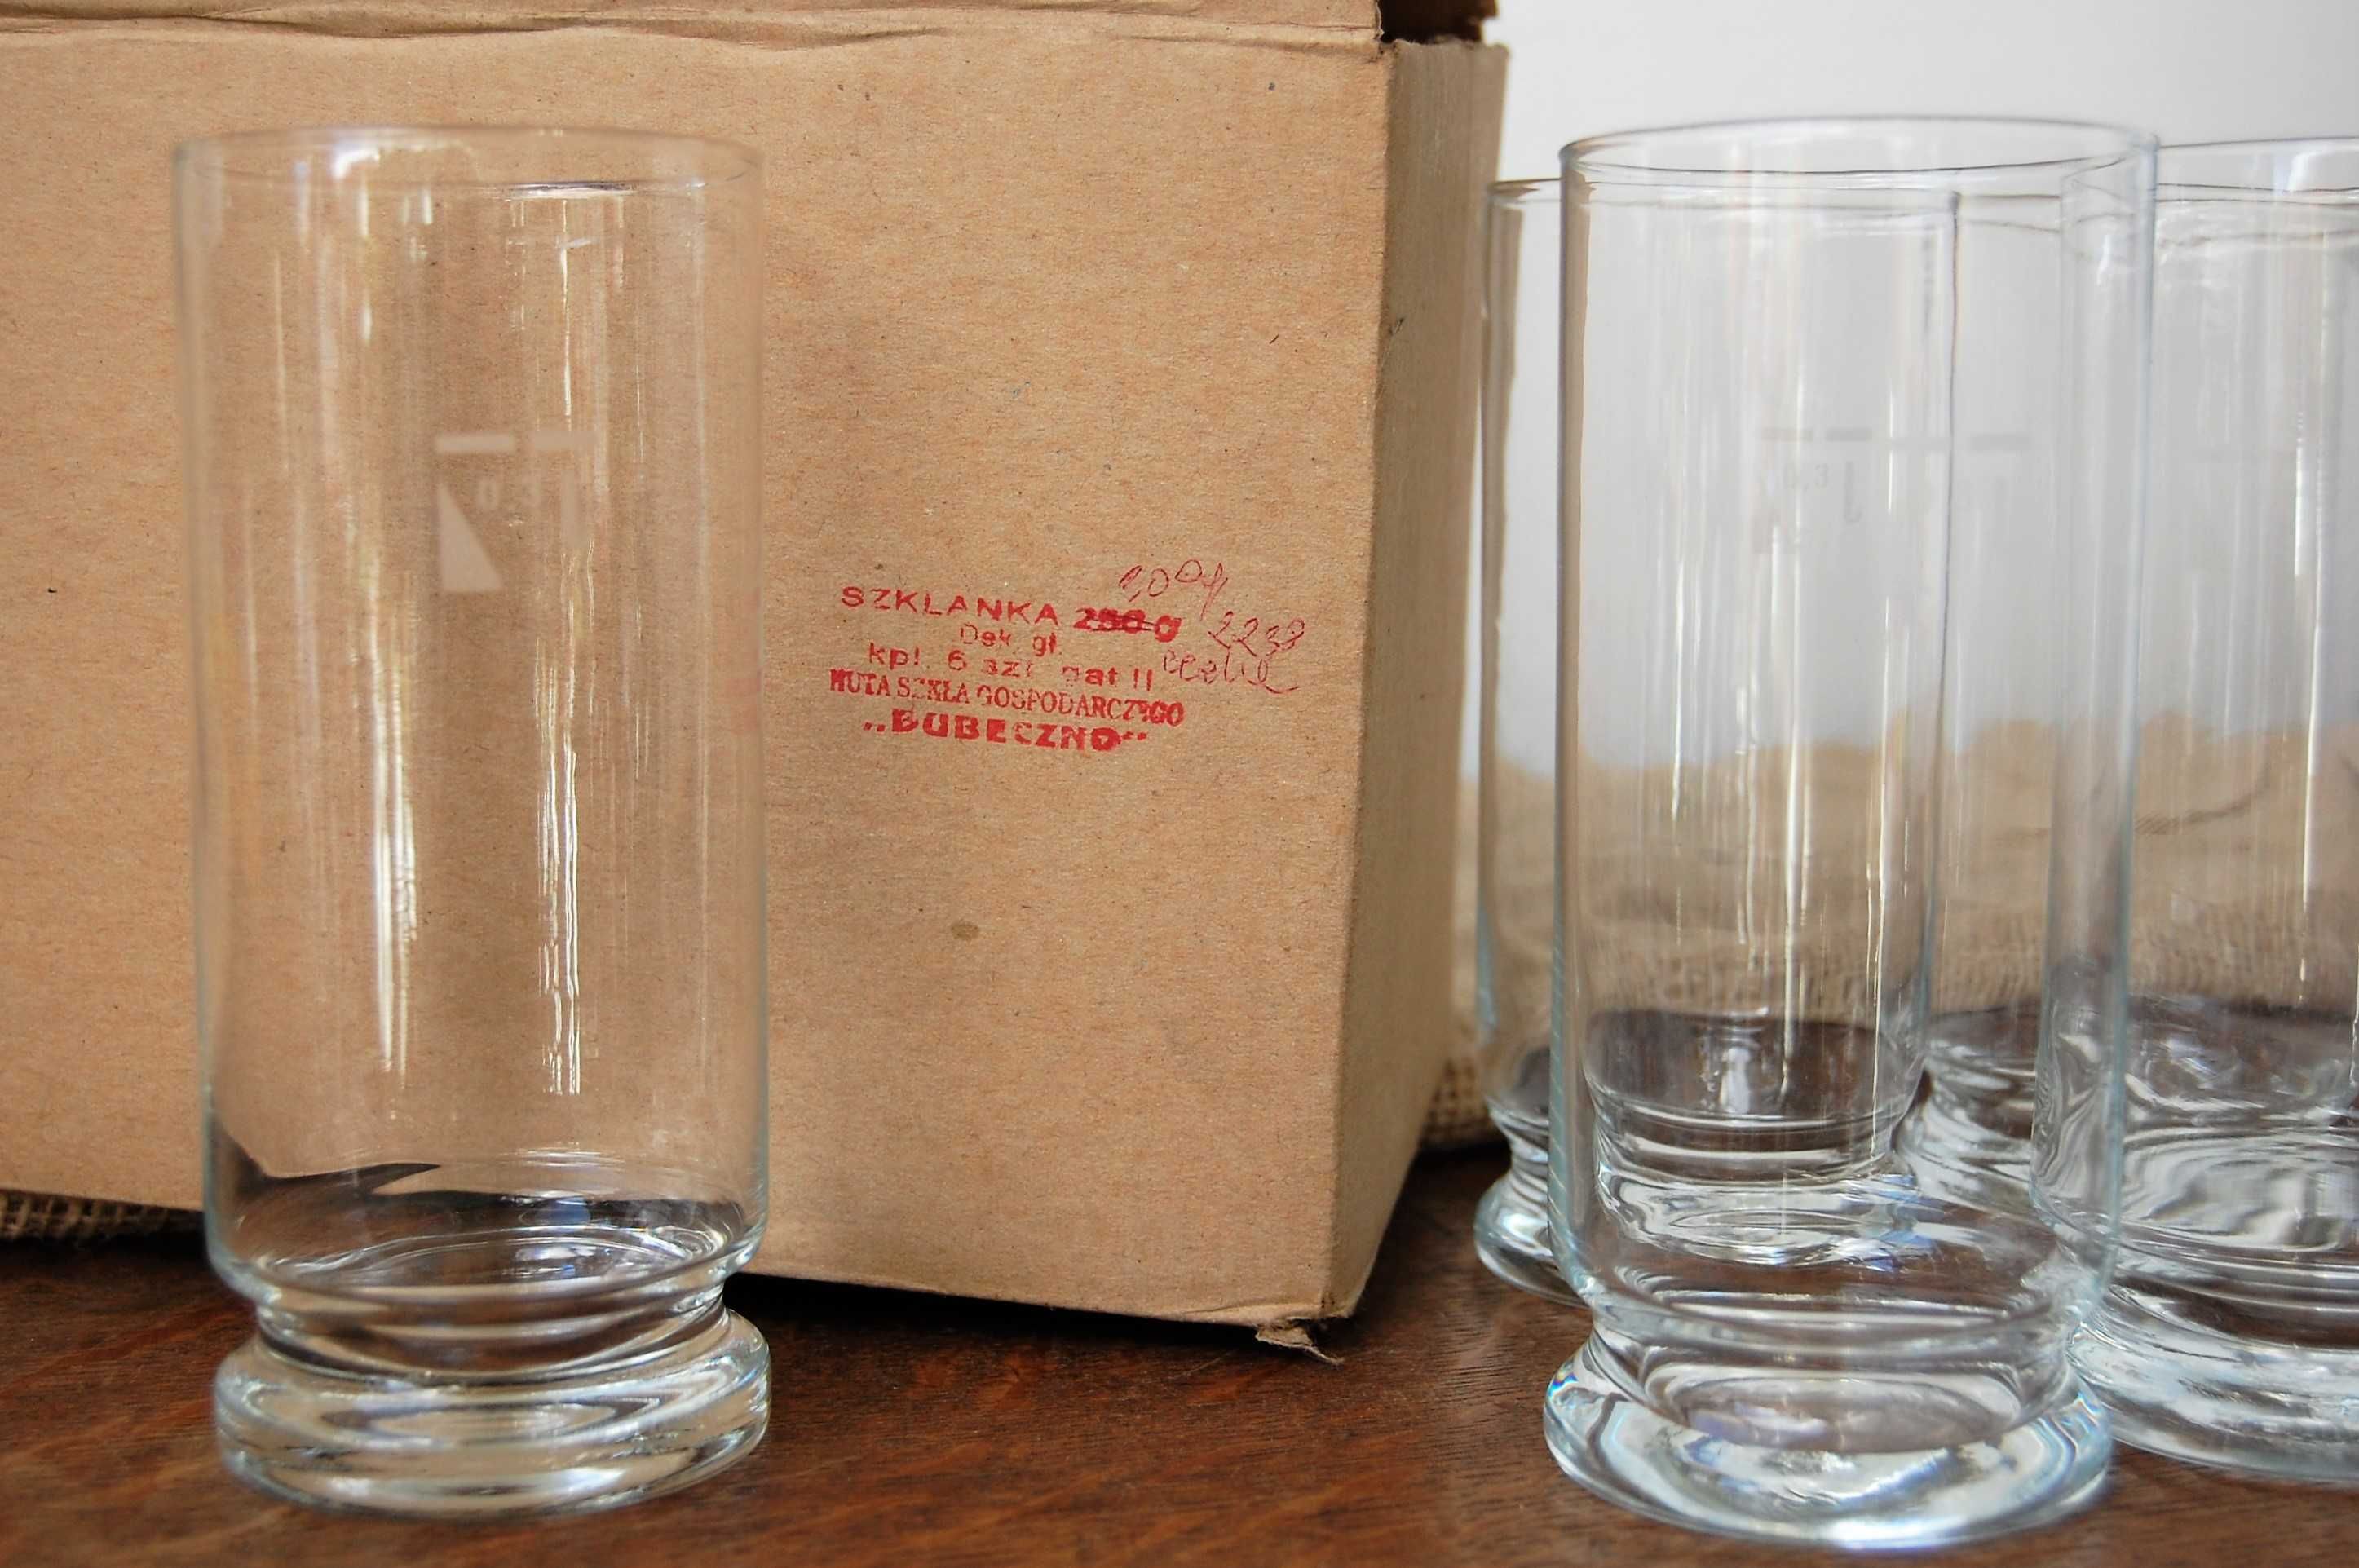 Szklanki ręcznie formowane, Dubeczno 0,3l, 6 sztuk, vintage